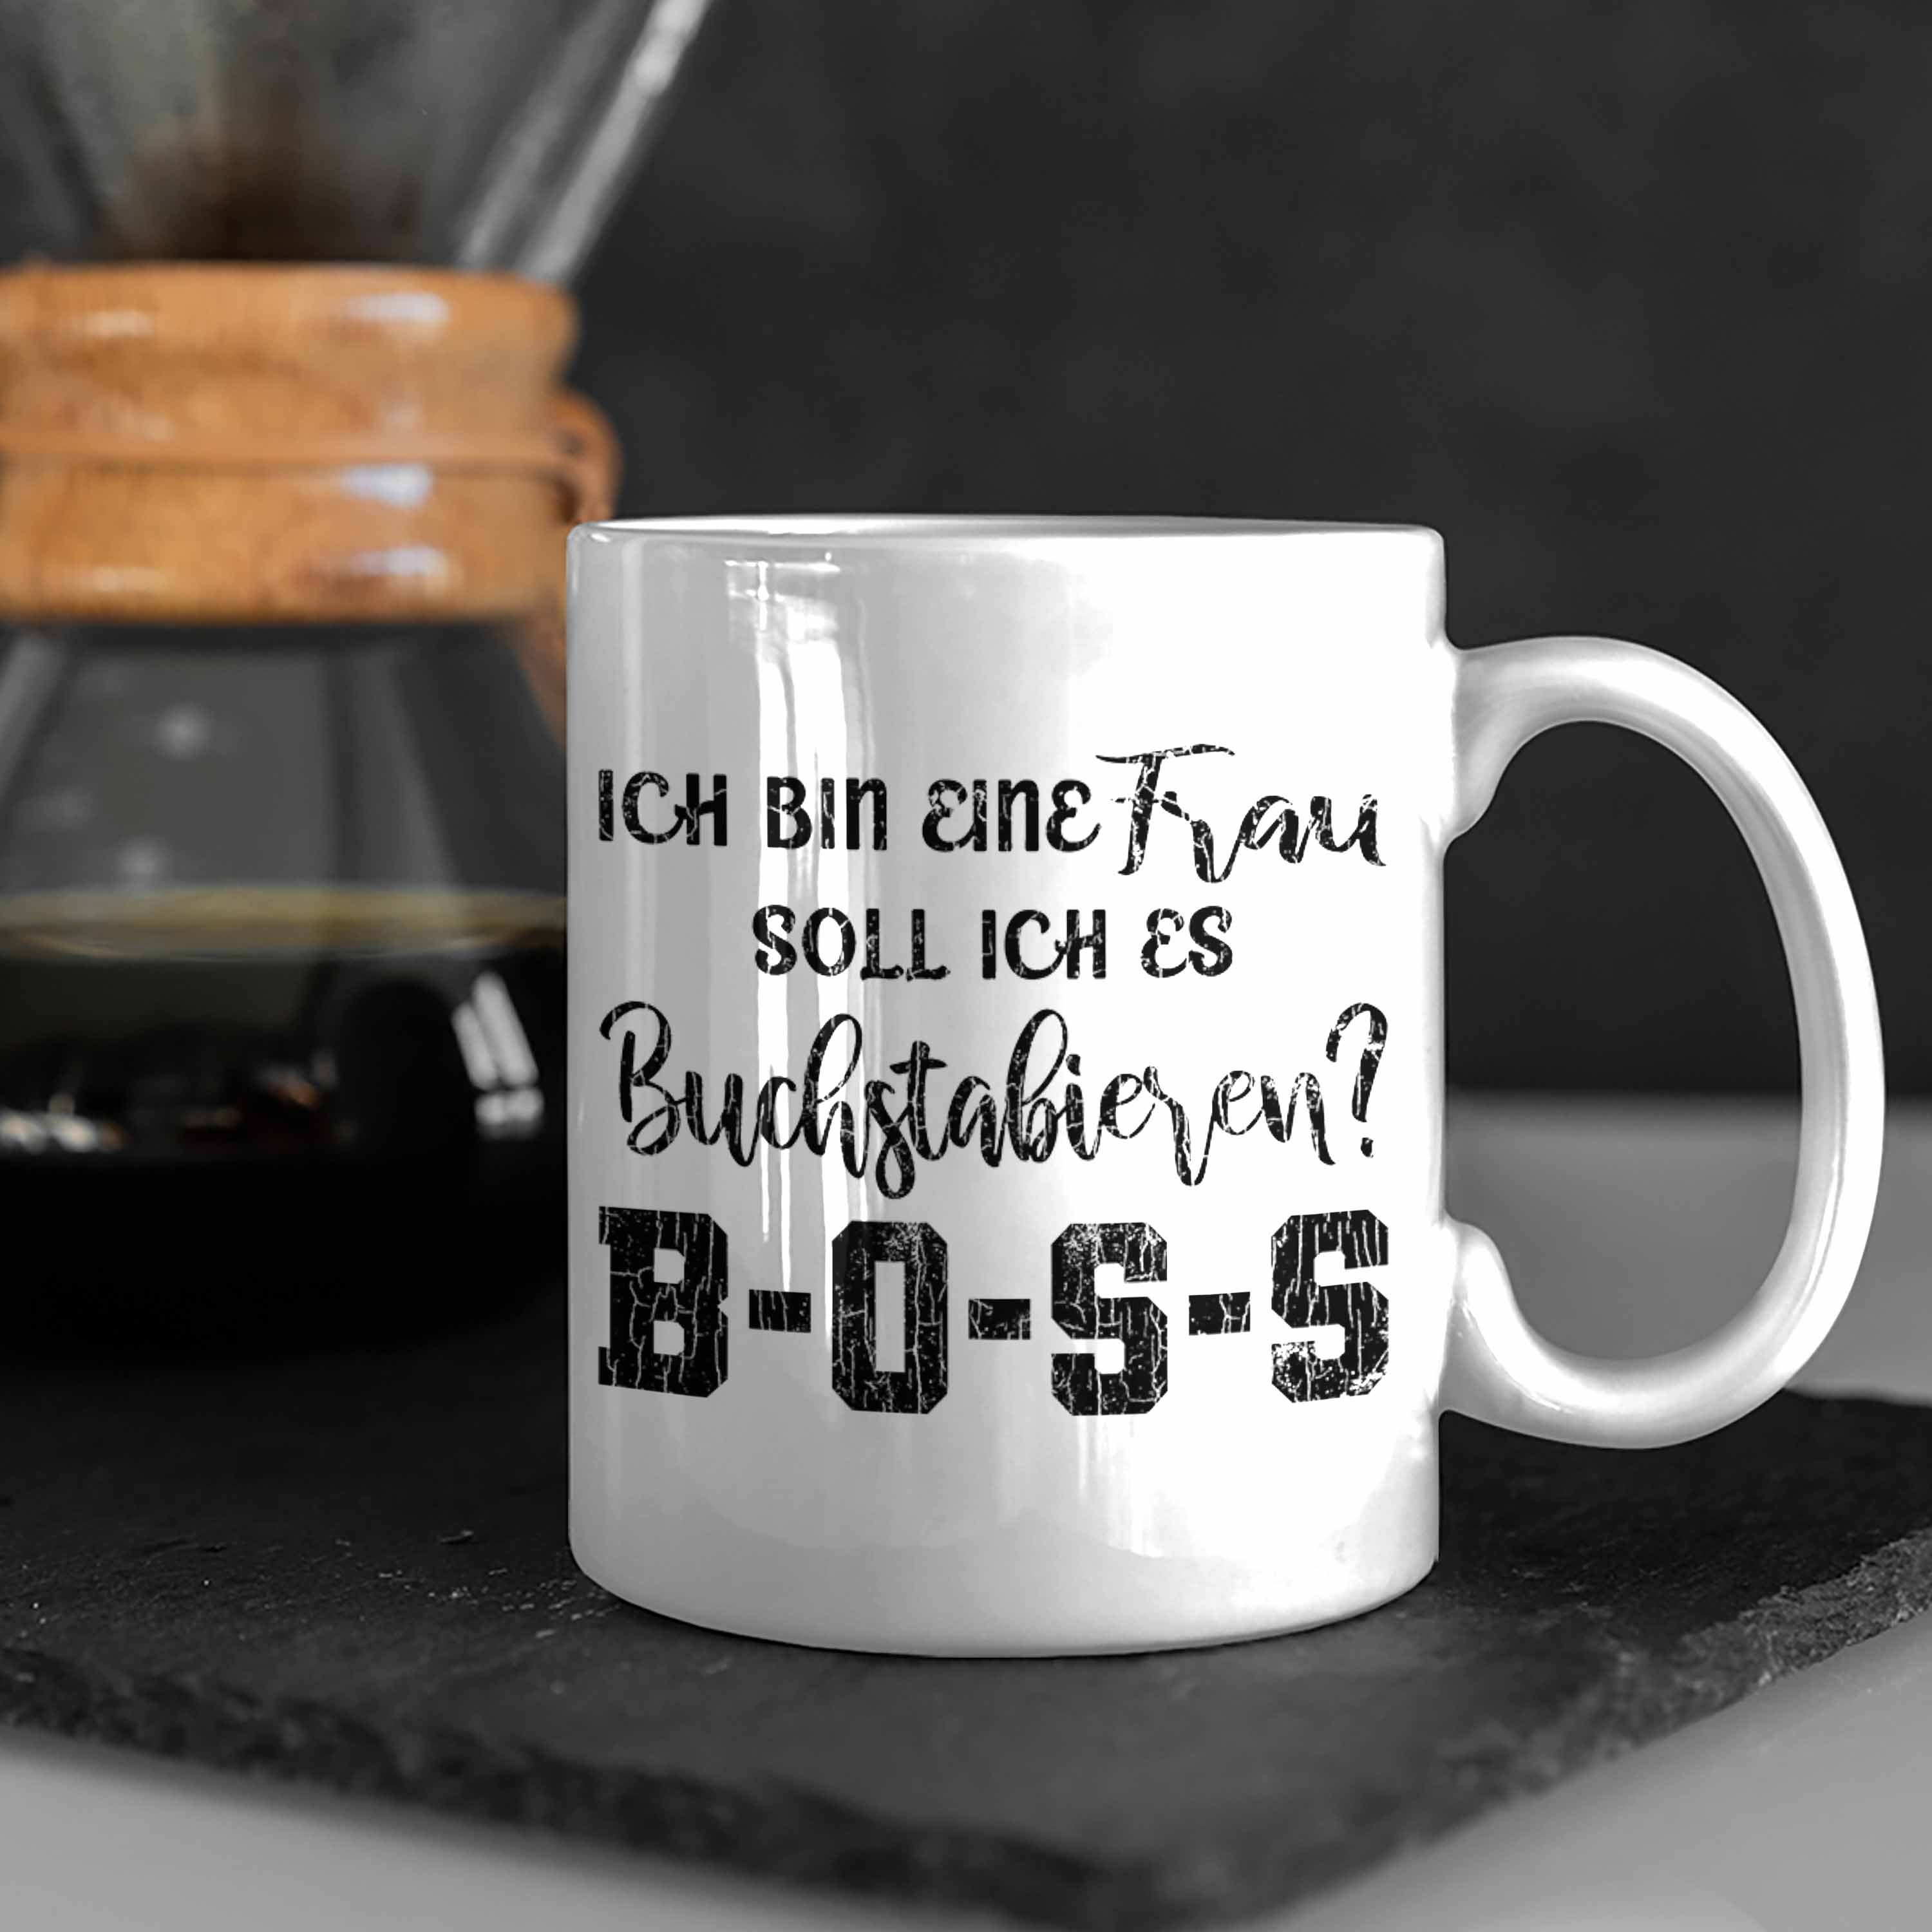 Trendation Tasse Boss Tasse - Spruch Frau mit Frauen Lustige Mama Geschenk Spruch Sprüche Kaffeetasse Trendation Weiss